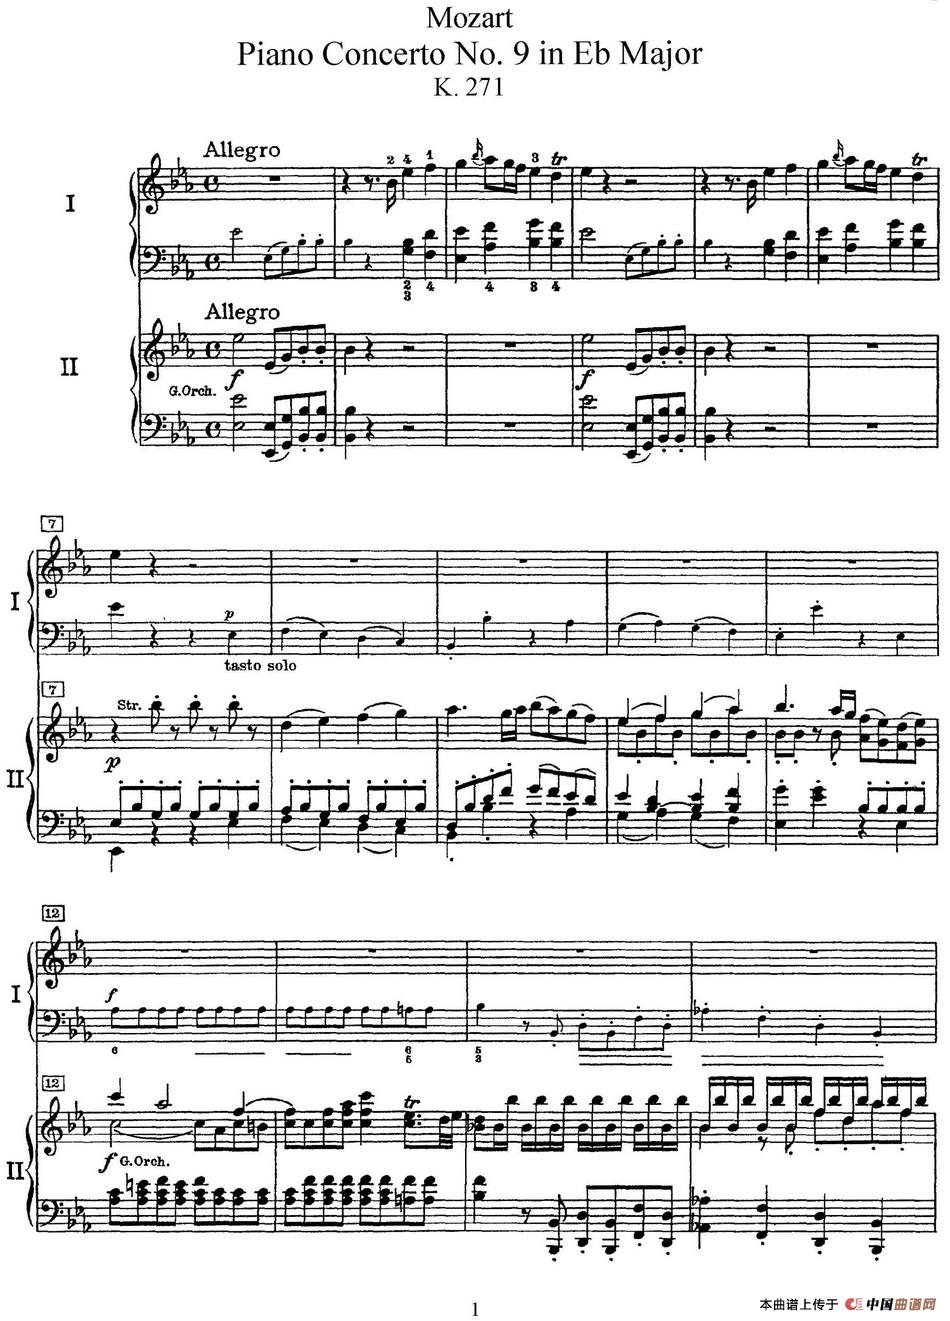 二十八部钢琴协奏曲 No.9（P1-15）